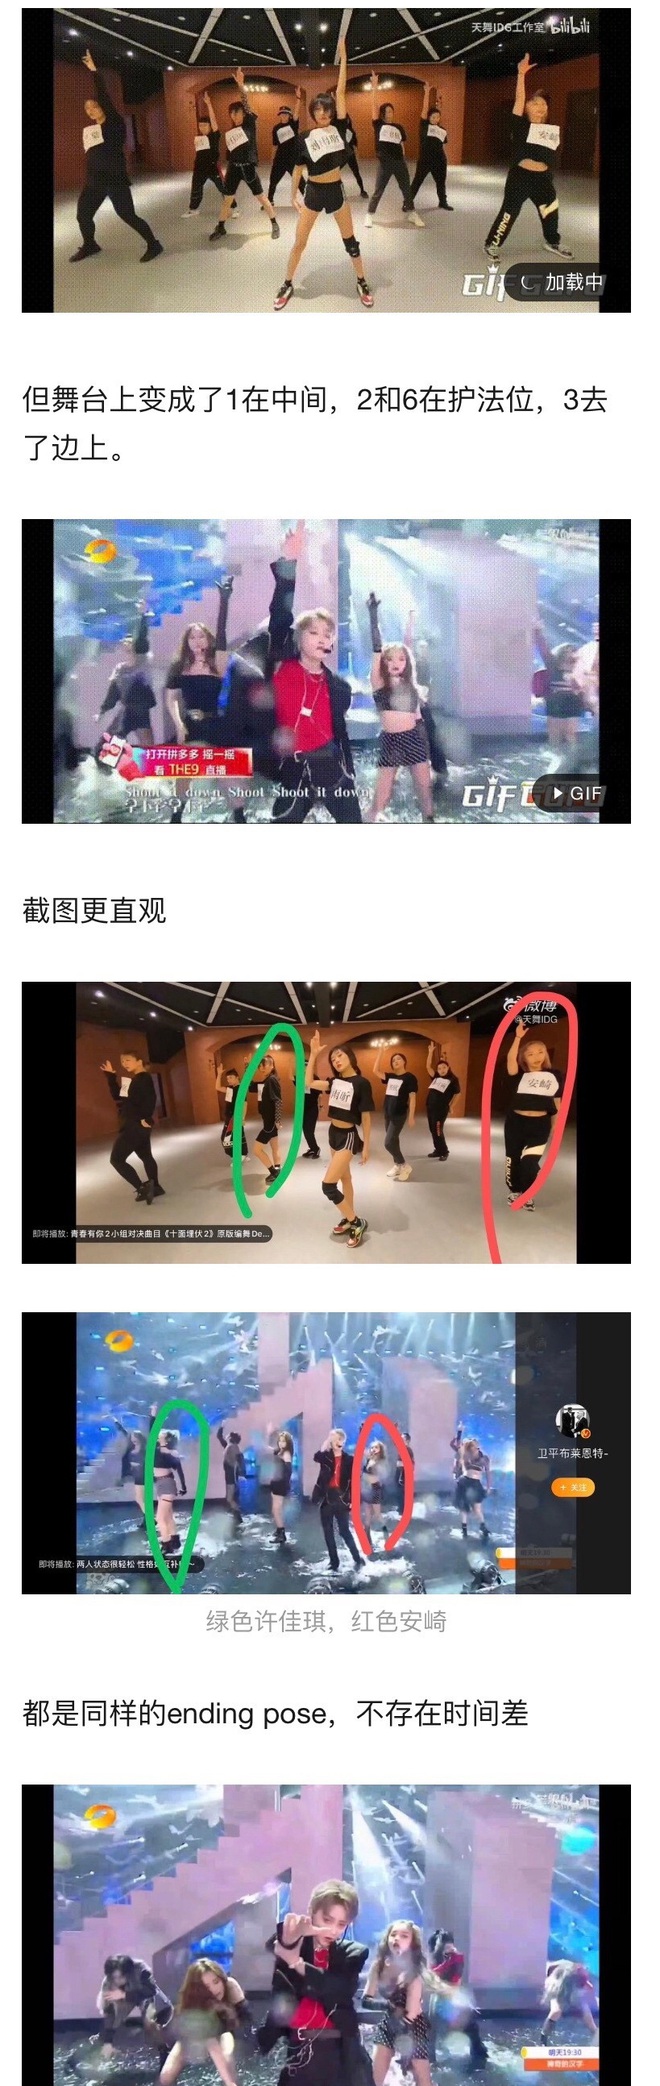 Tranh cãi nảy lửa trên Weibo: Một thành viên THE9 được biệt đãi lộ liễu, debut nhưng danh không xứng với thực? - Ảnh 4.